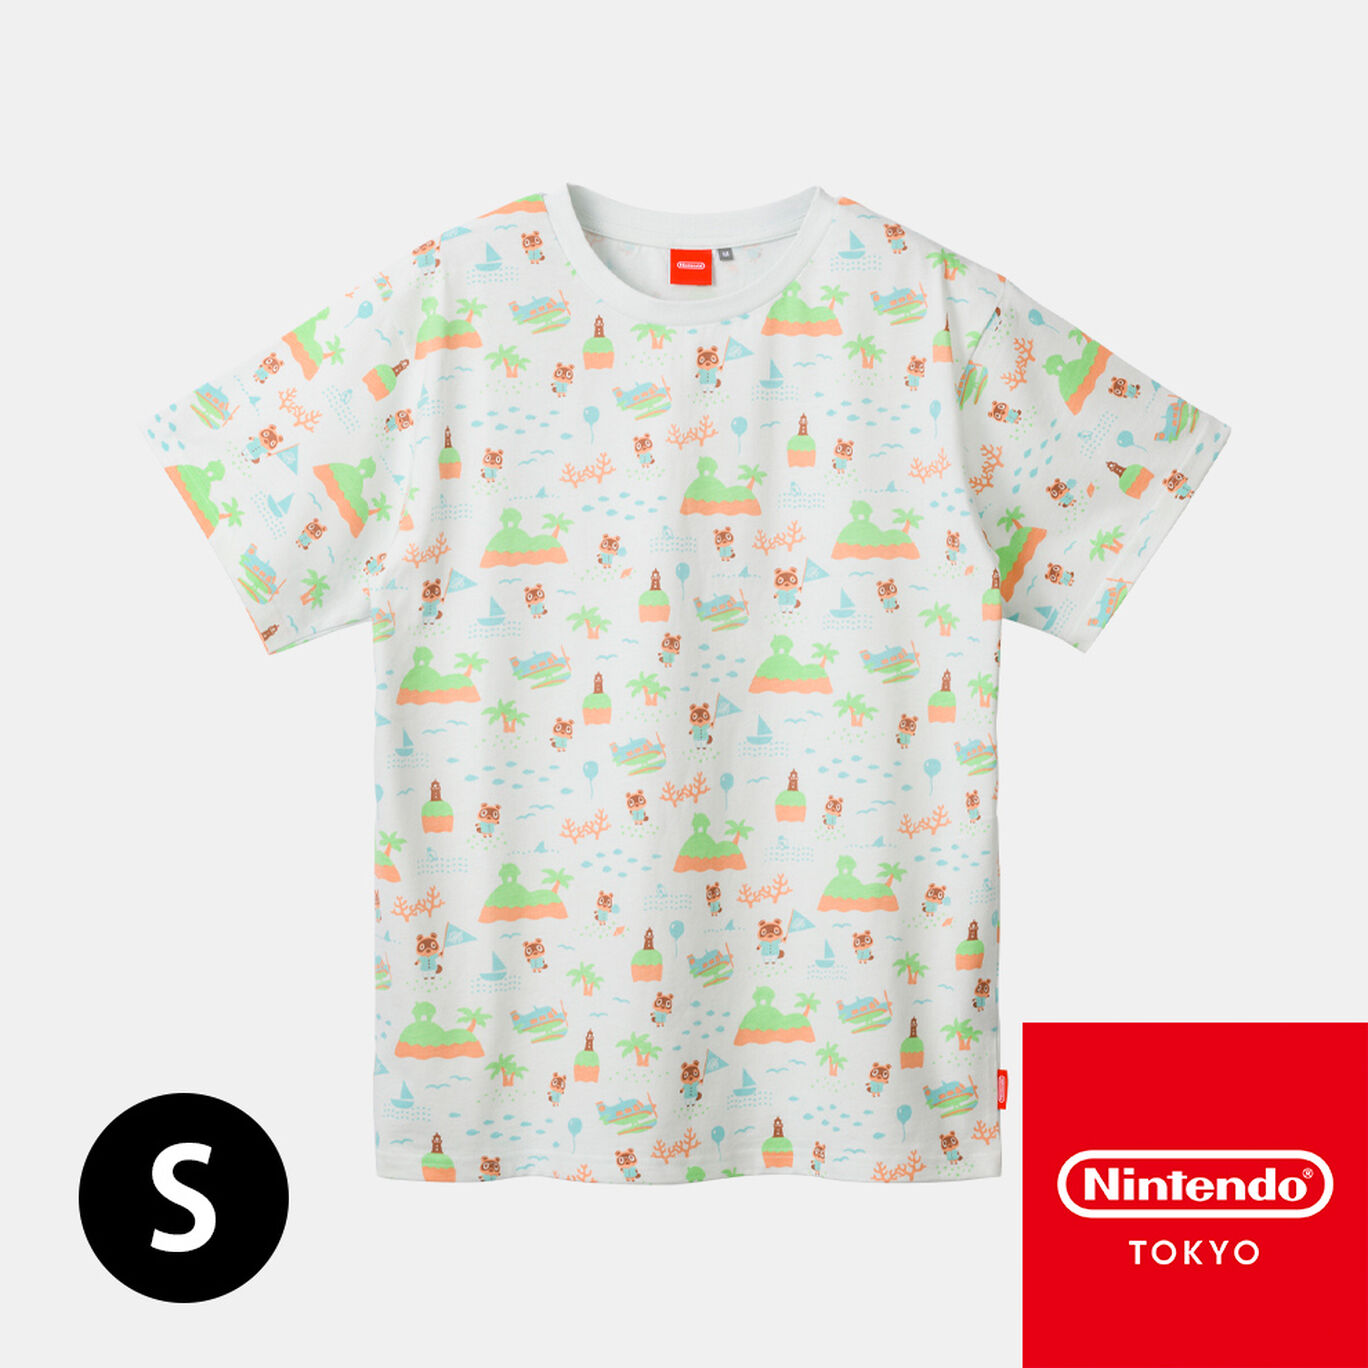 Tシャツb あつまれ どうぶつの森 Nintendo Tokyo取り扱い商品 My Nintendo Store マイニンテンドーストア